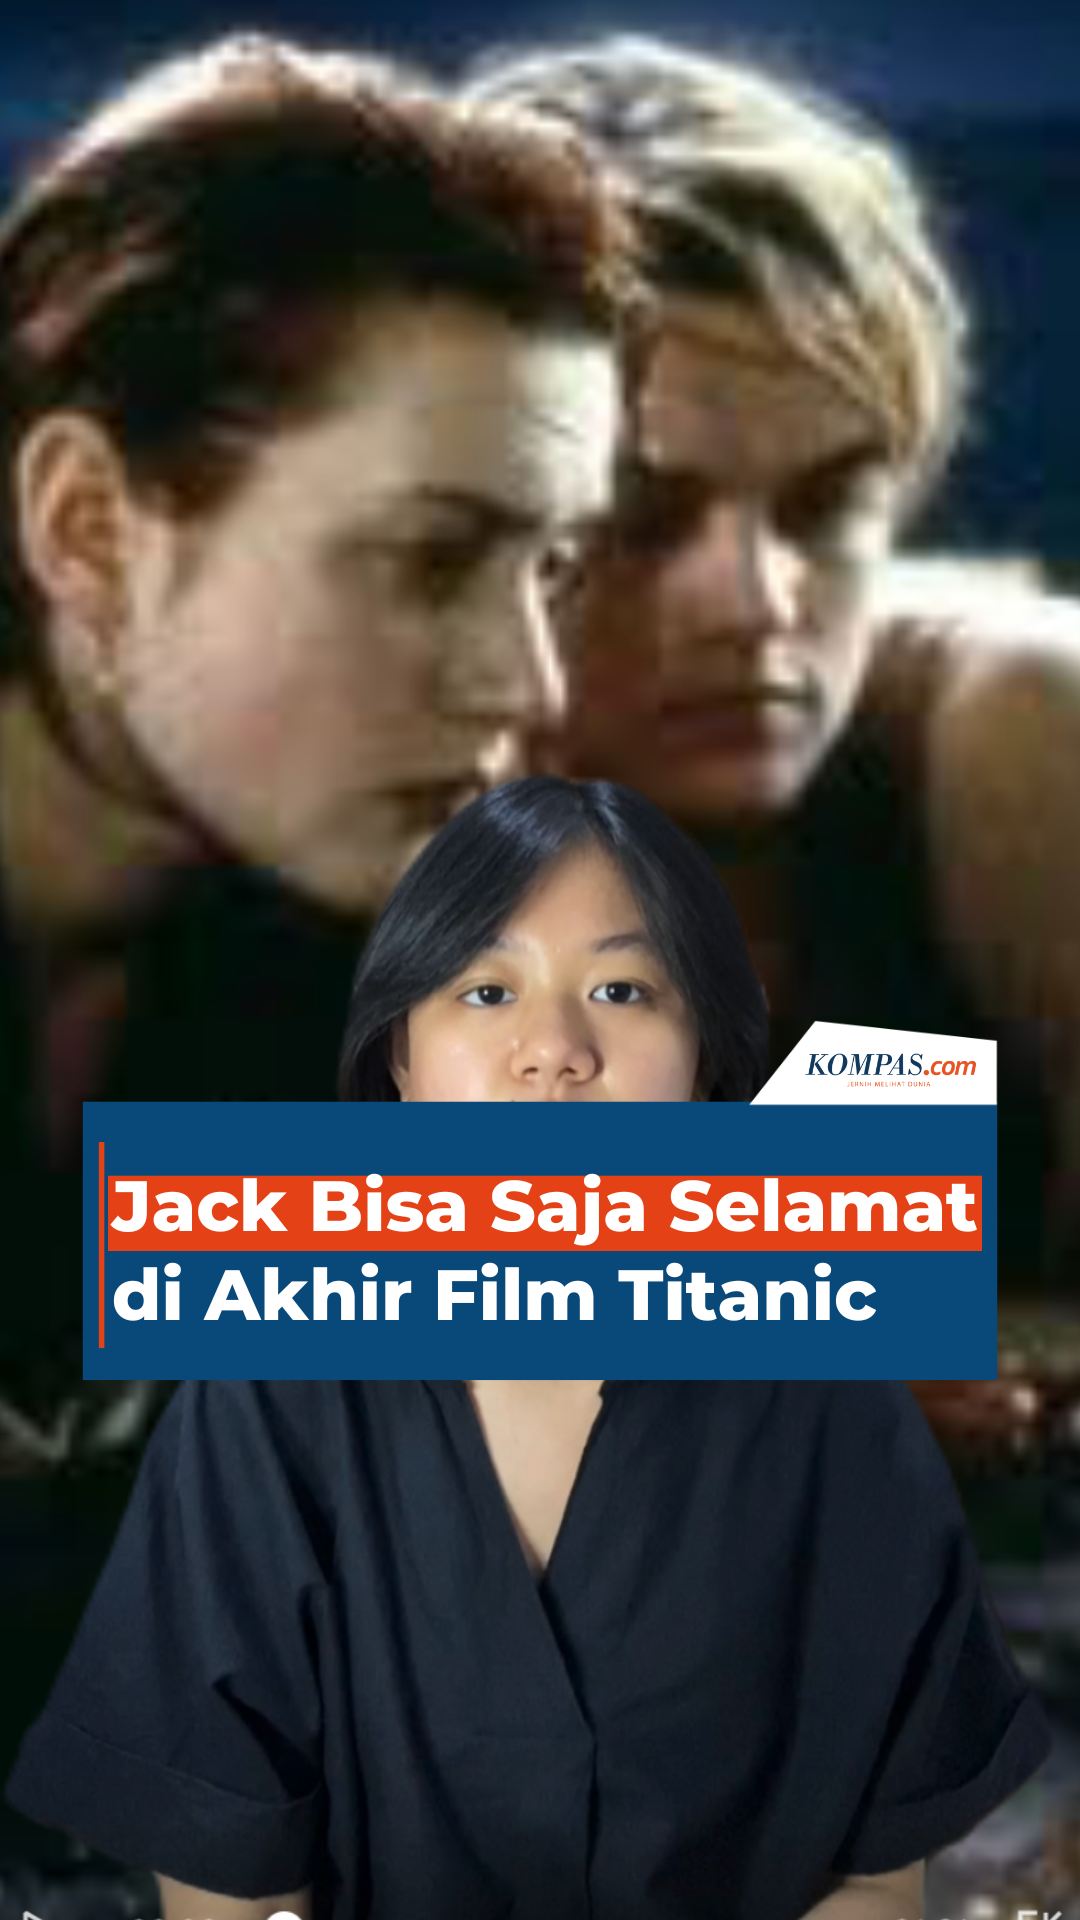 Jack Bisa Saja Selamat di Akhir Film Titanic